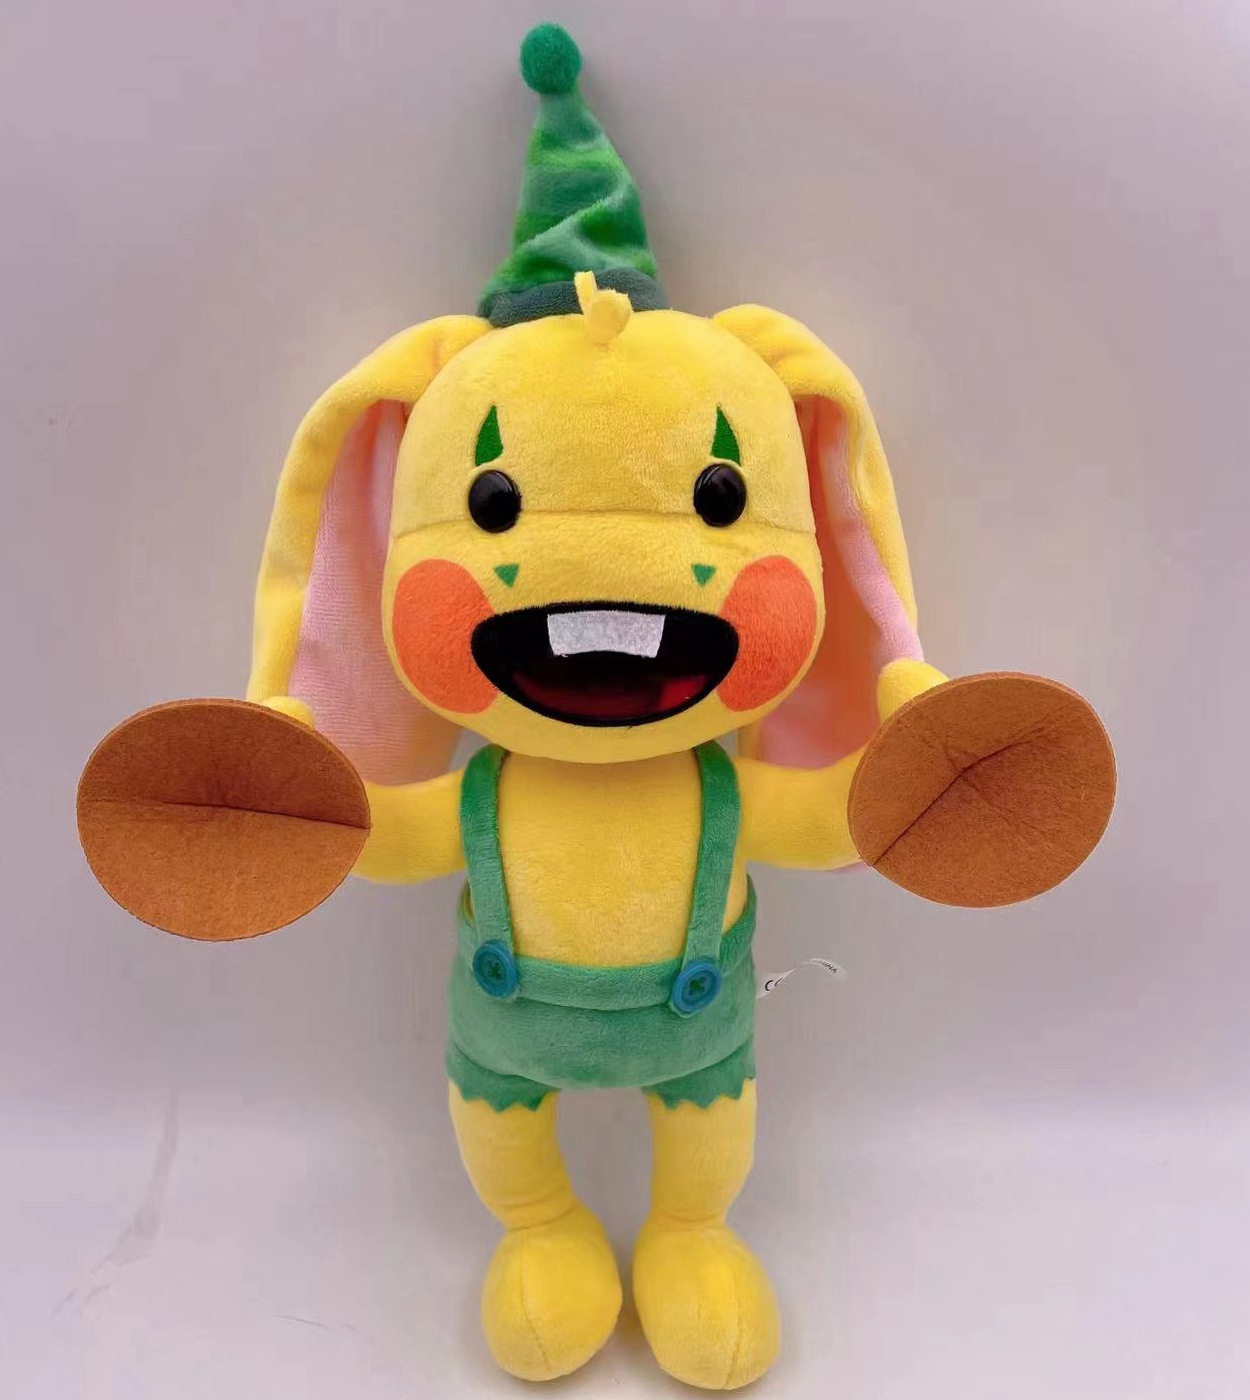 Poppyplaytime, Toys, Bunzo Bunny Plush Poppy Playtime Character Plush